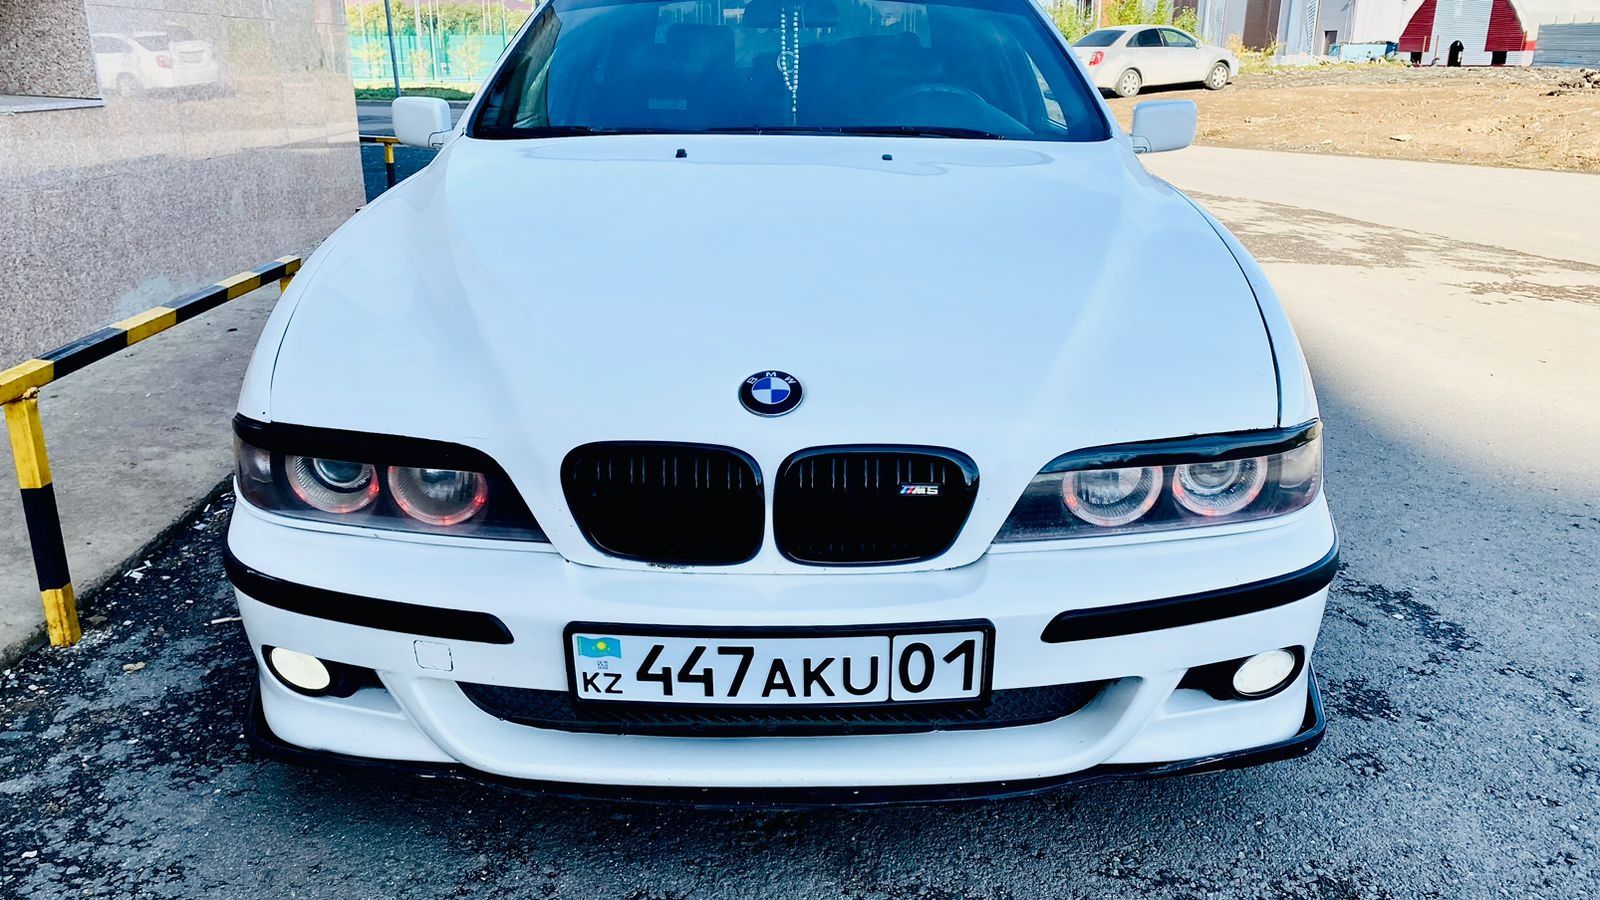 Продам BMW E39 в хорошем виде